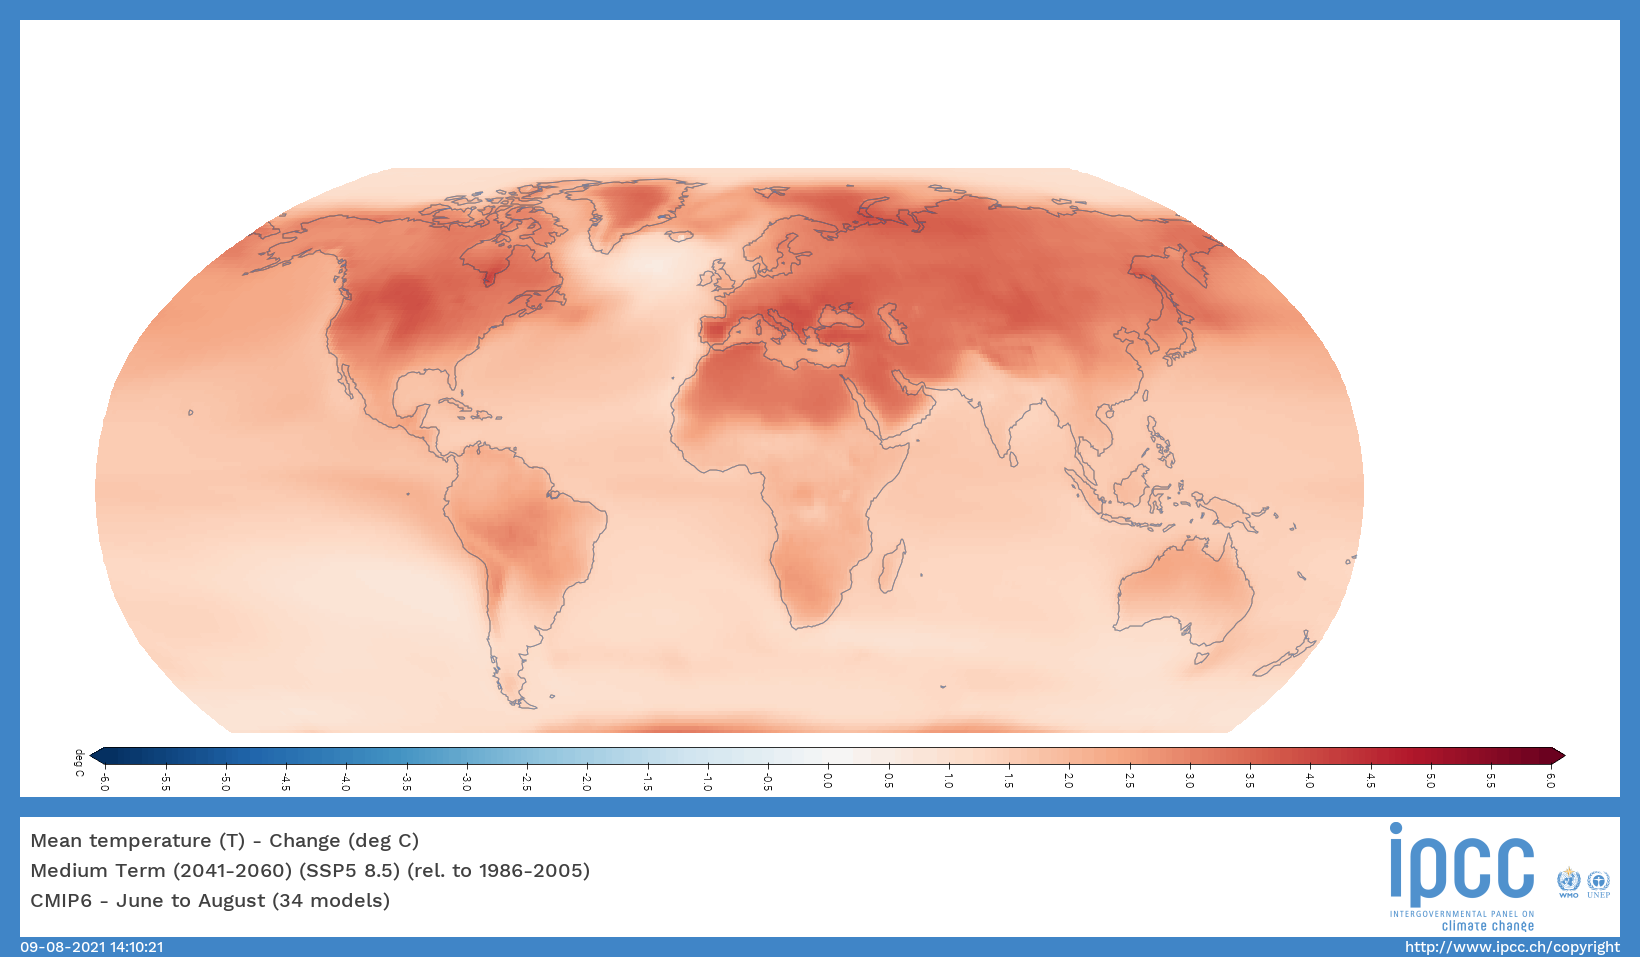 2041 és 2060 között így változna az átlaghőmérséklet nyaranta. Minél sötétebb a térkép, annál magasabb a változás mértéke.